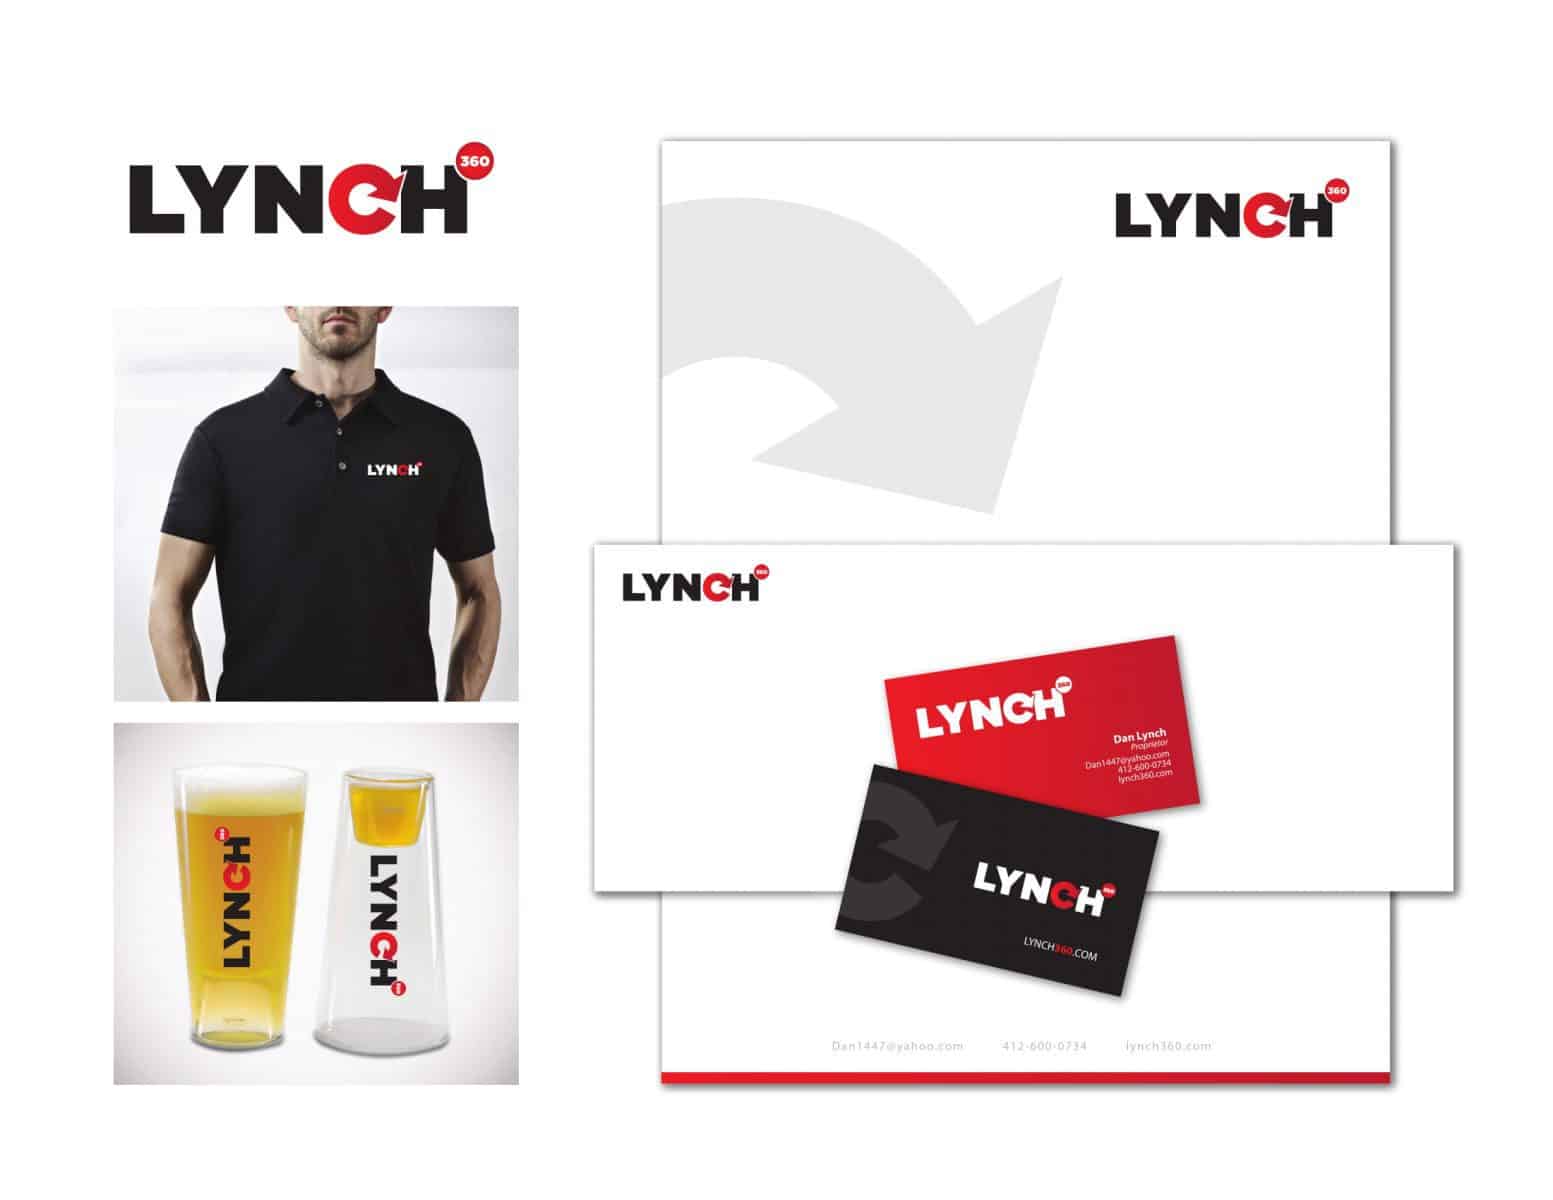 Lynch Logo and branding